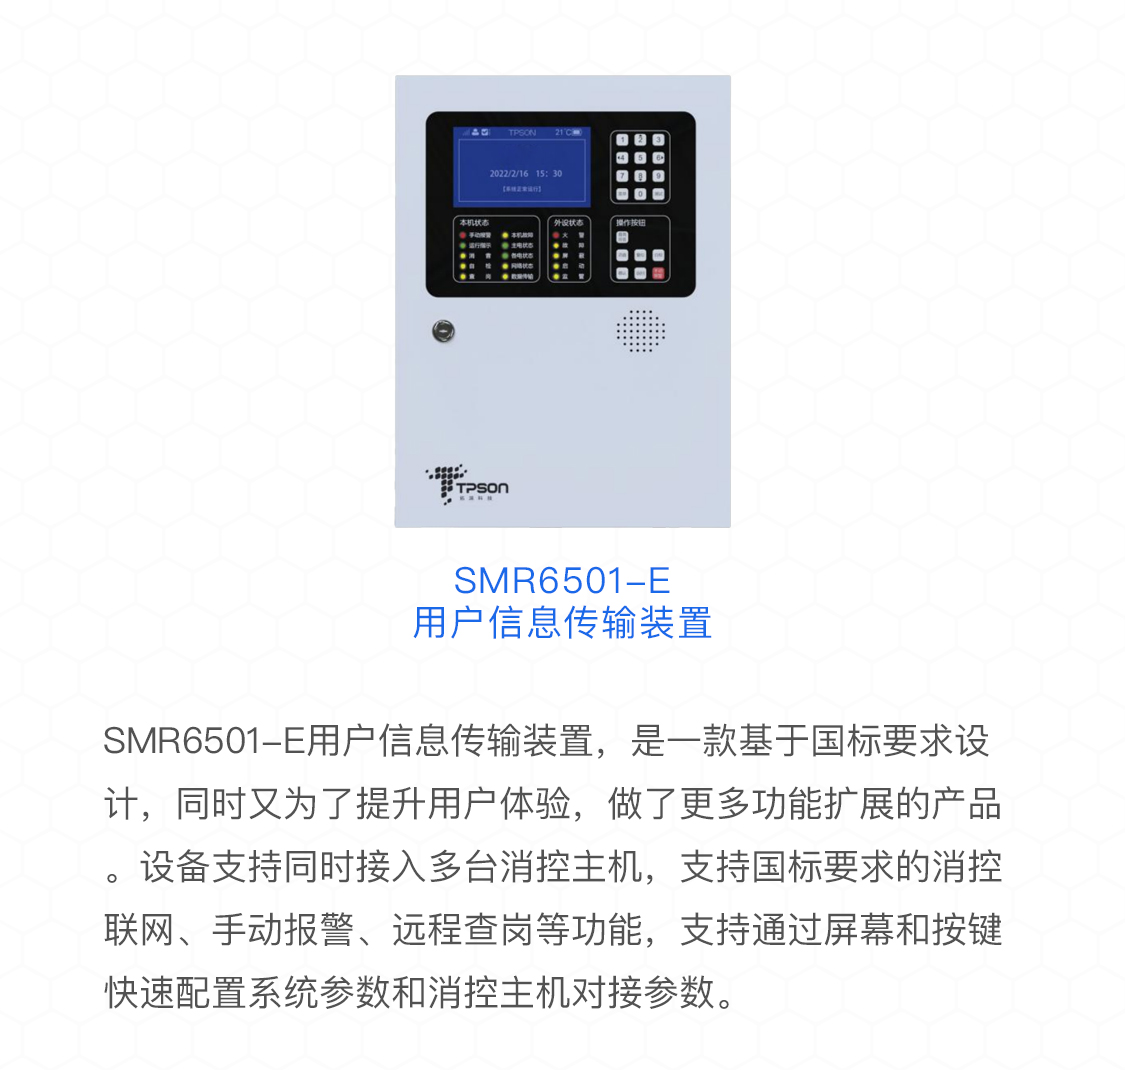 SMR6501-E用户信息传输装置概述